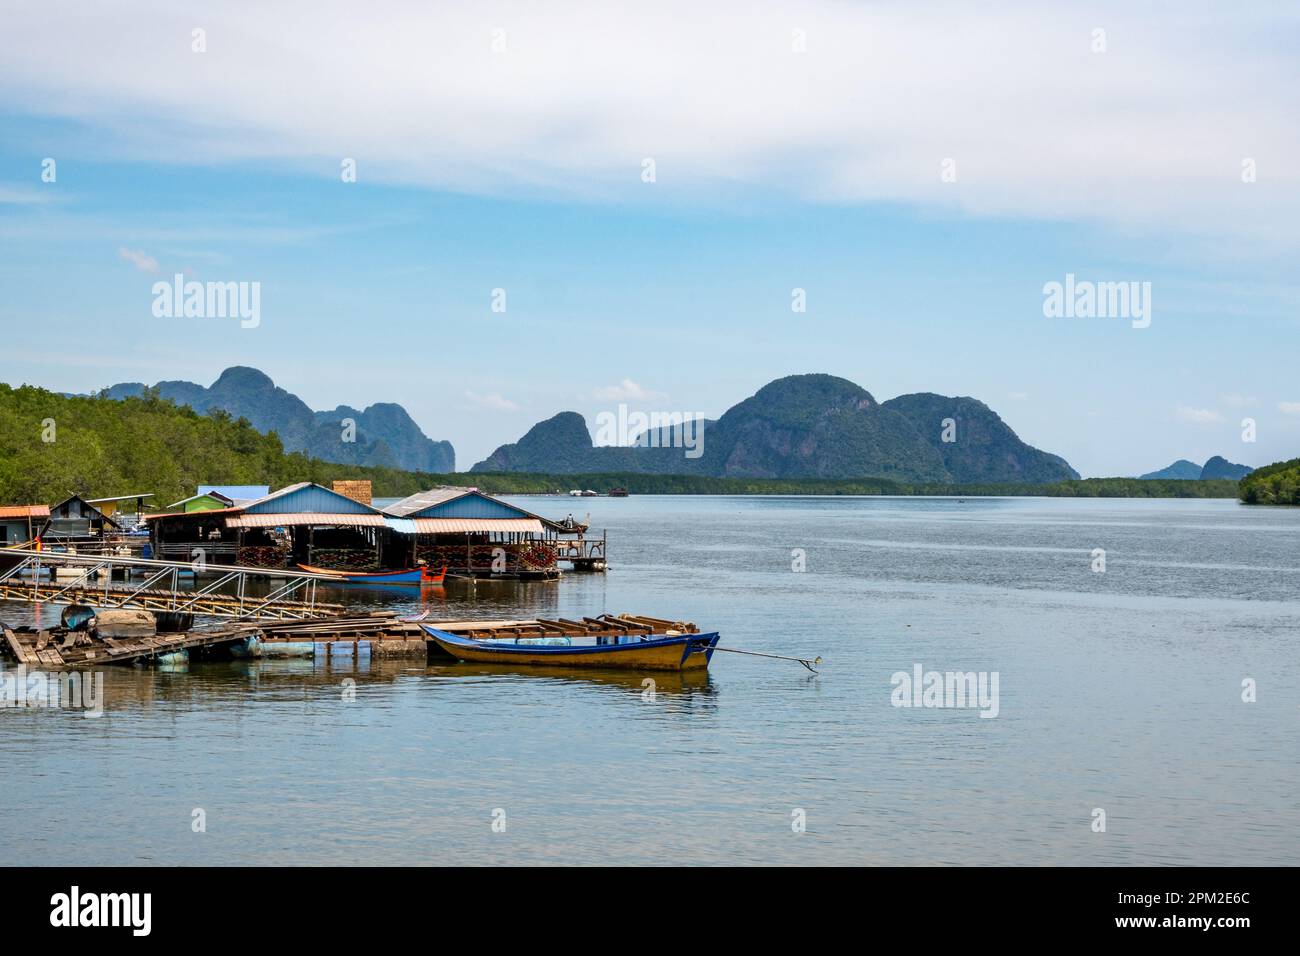 Boats along the Bang Lam River. Kalai, Thailand. Stock Photo